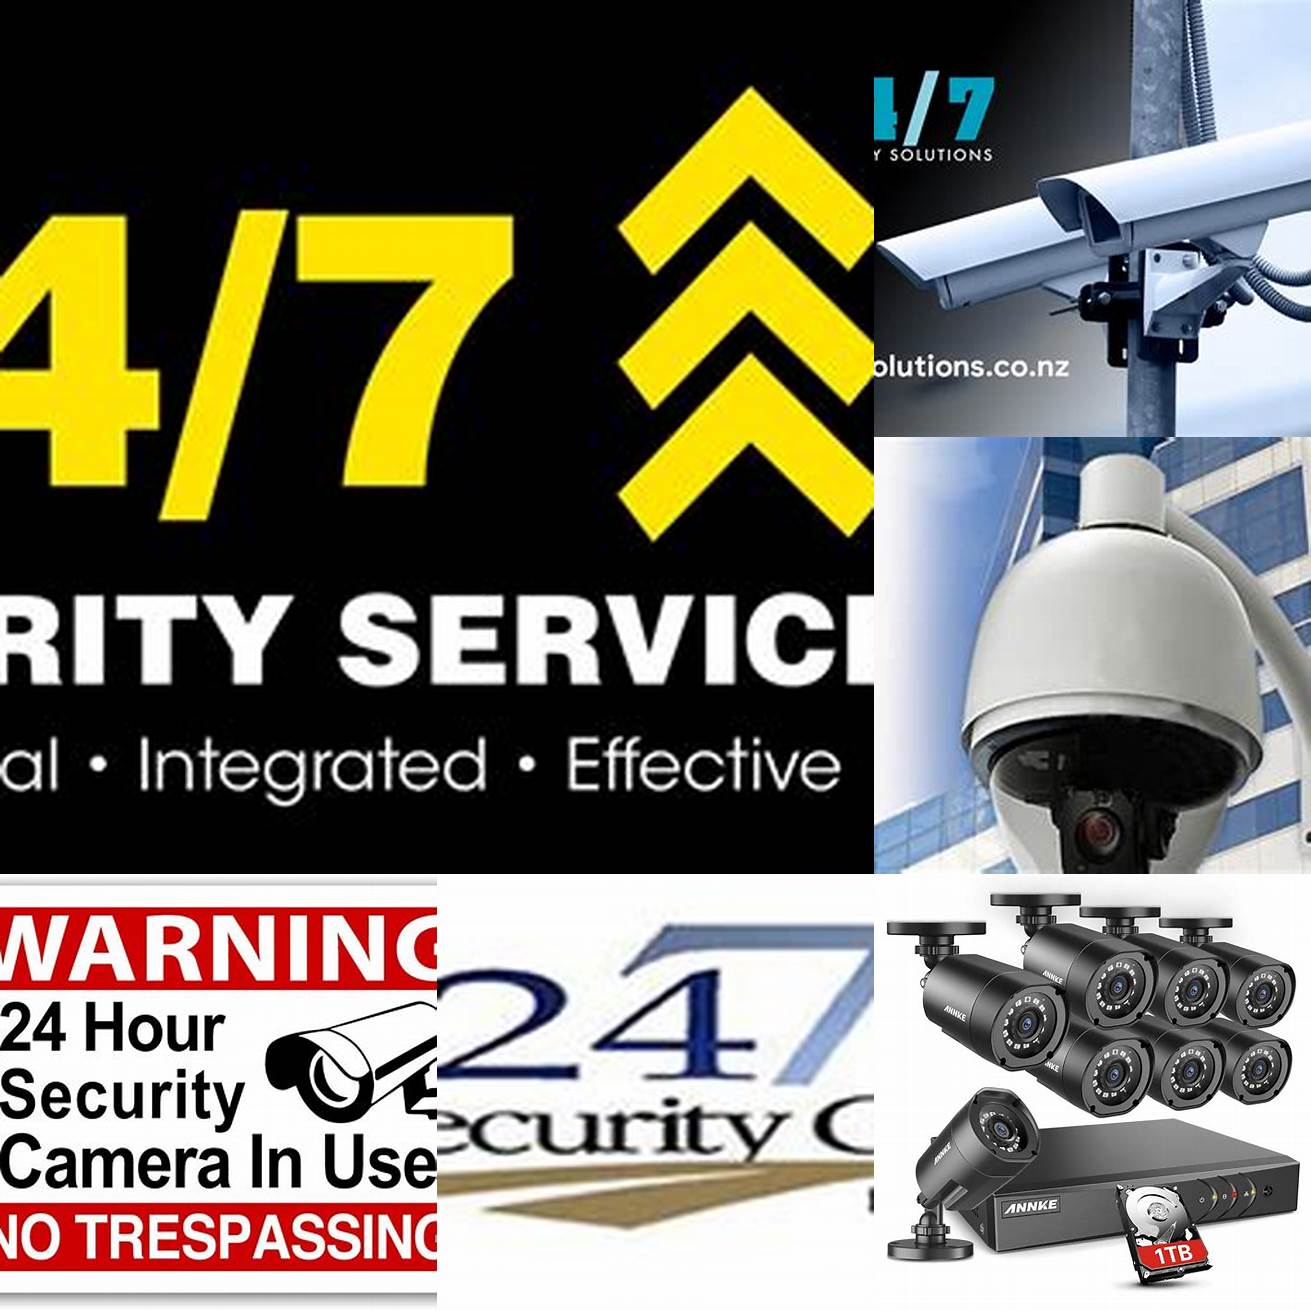 No 247 security